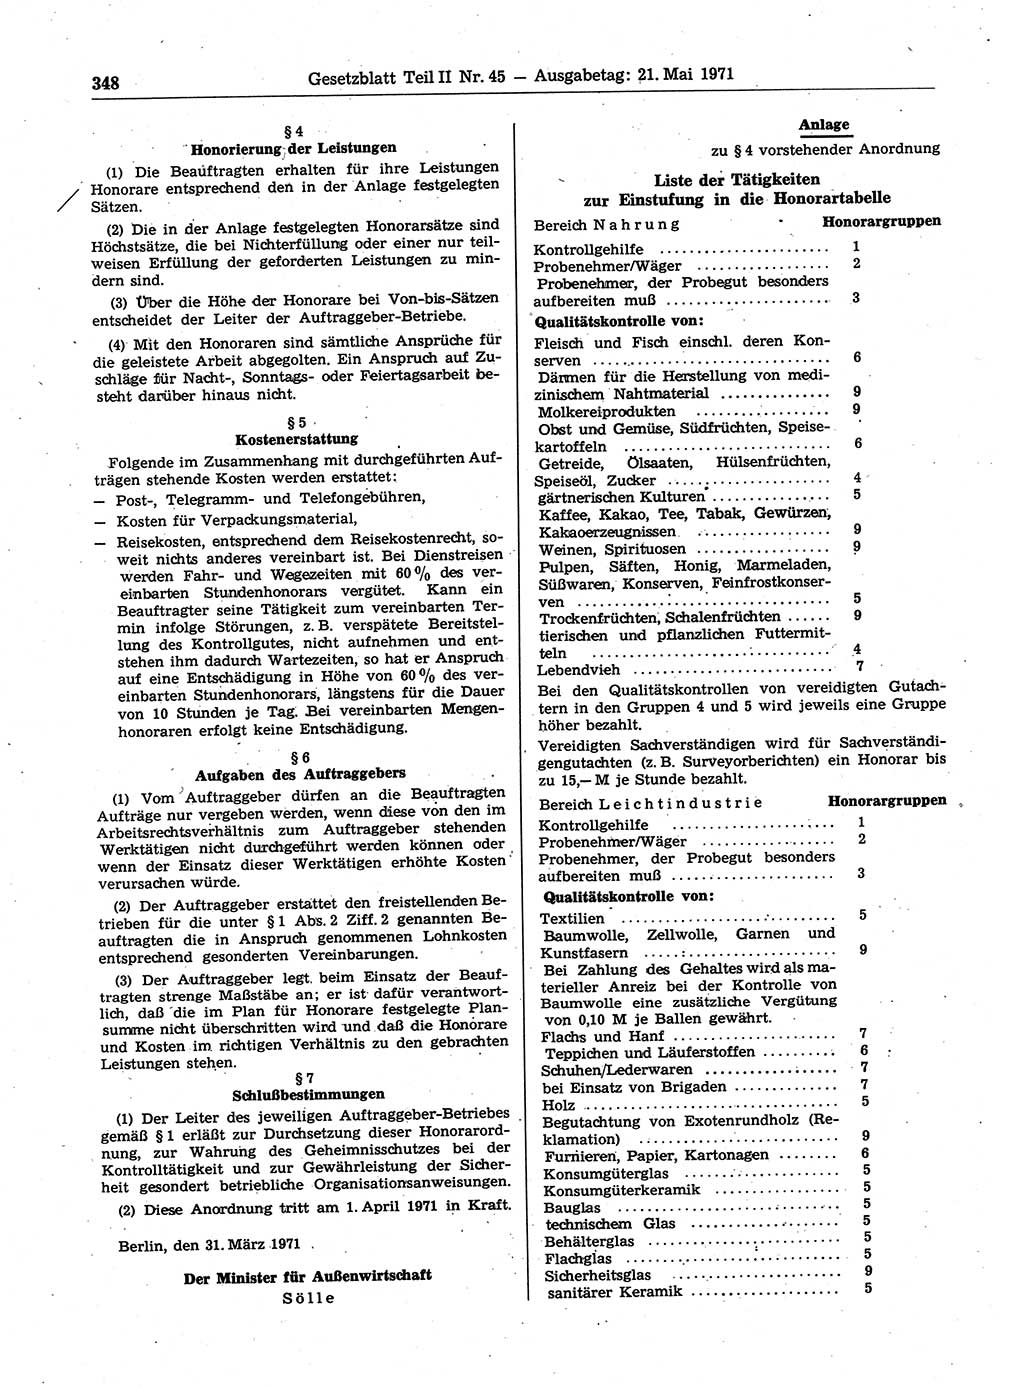 Gesetzblatt (GBl.) der Deutschen Demokratischen Republik (DDR) Teil ⅠⅠ 1971, Seite 348 (GBl. DDR ⅠⅠ 1971, S. 348)